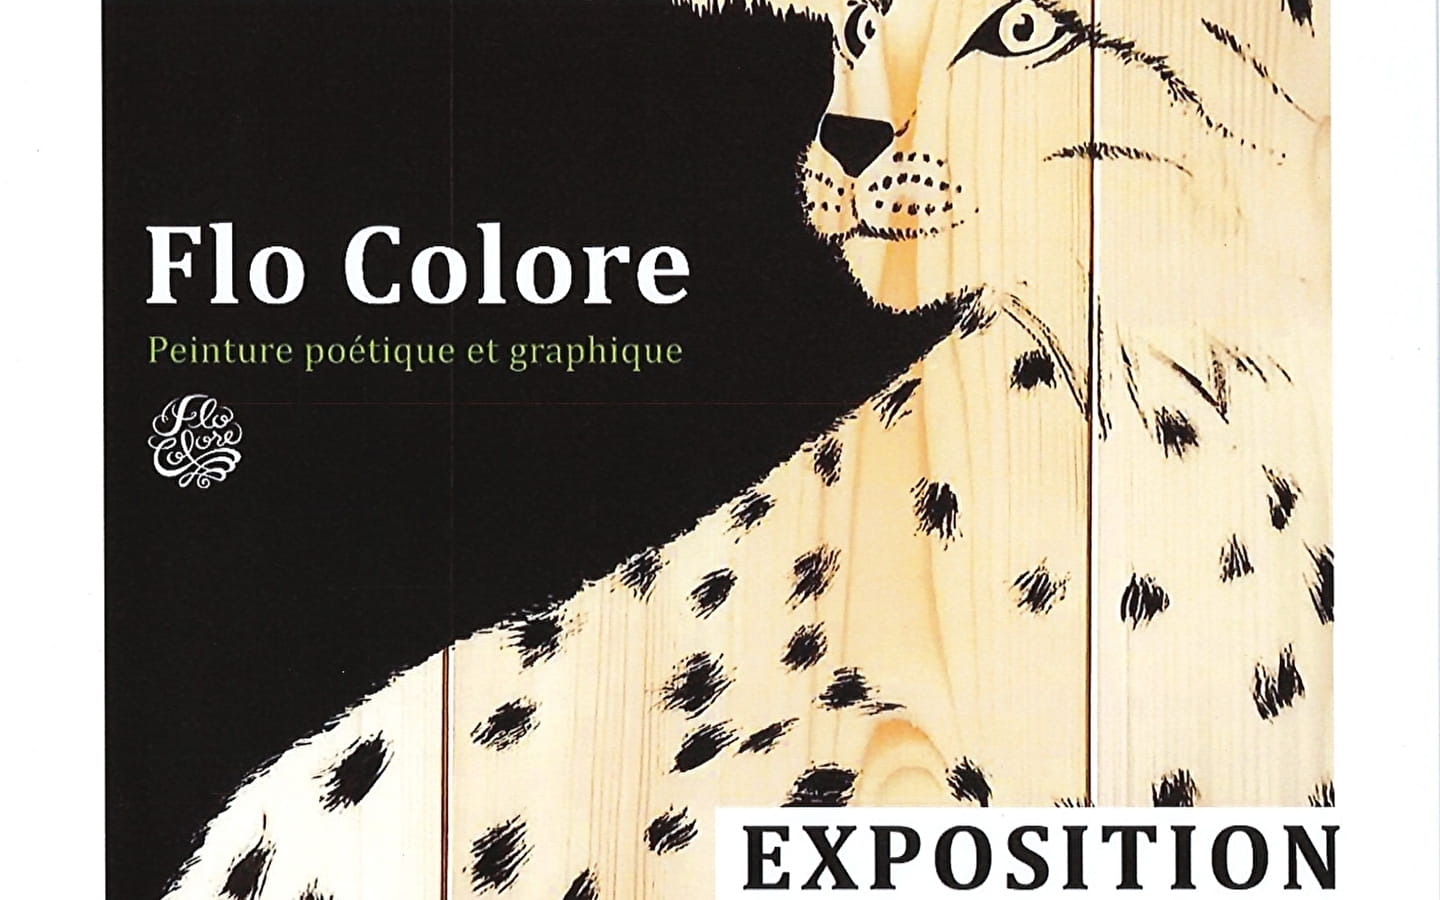 Ausstellung: Flo Colore, poetische und grafische Malerei.